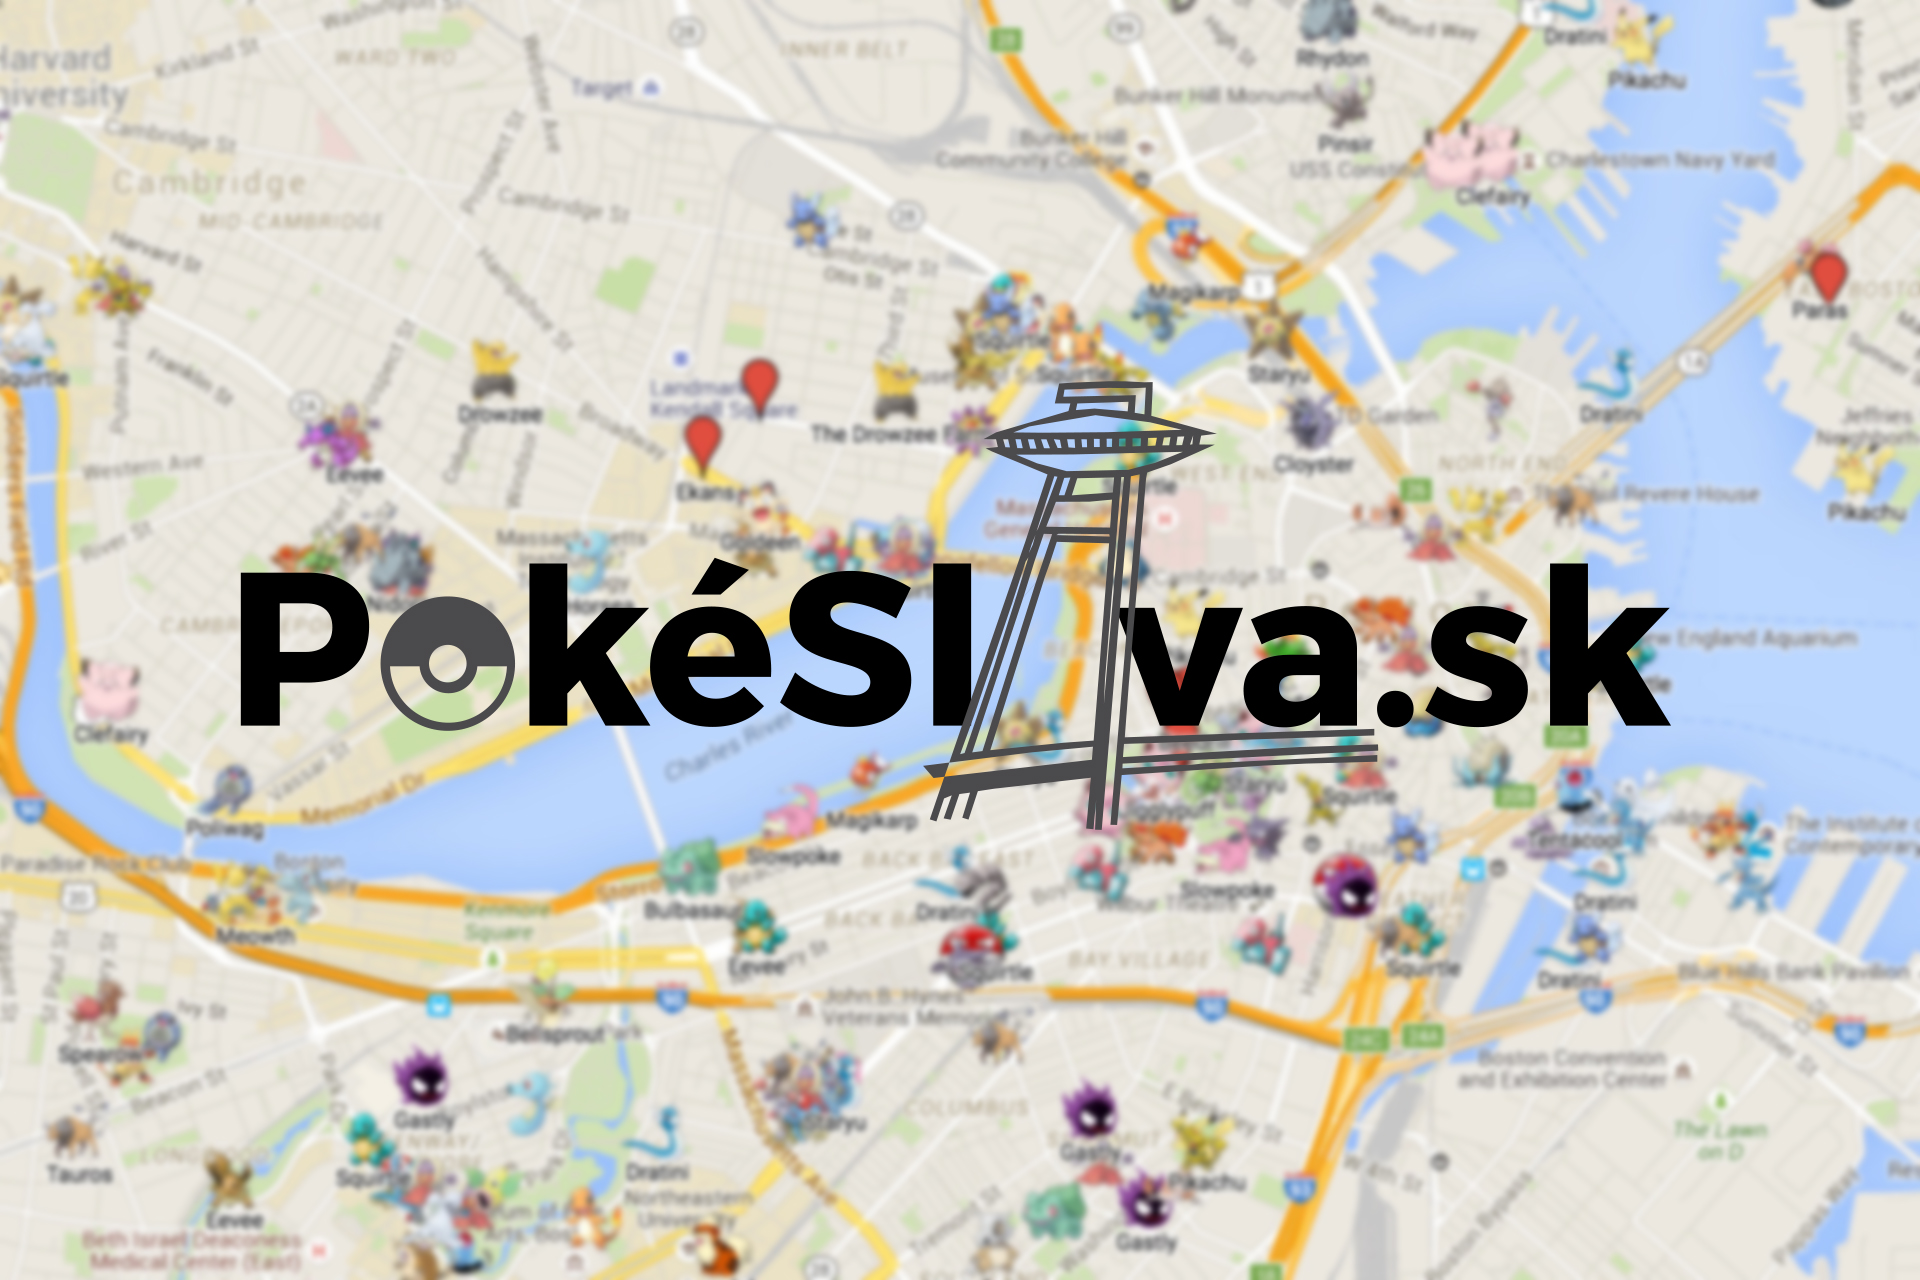 Pokéslava, web, ktorý ti ukazuje vždy aktuálnych pokémonov v Bratislave